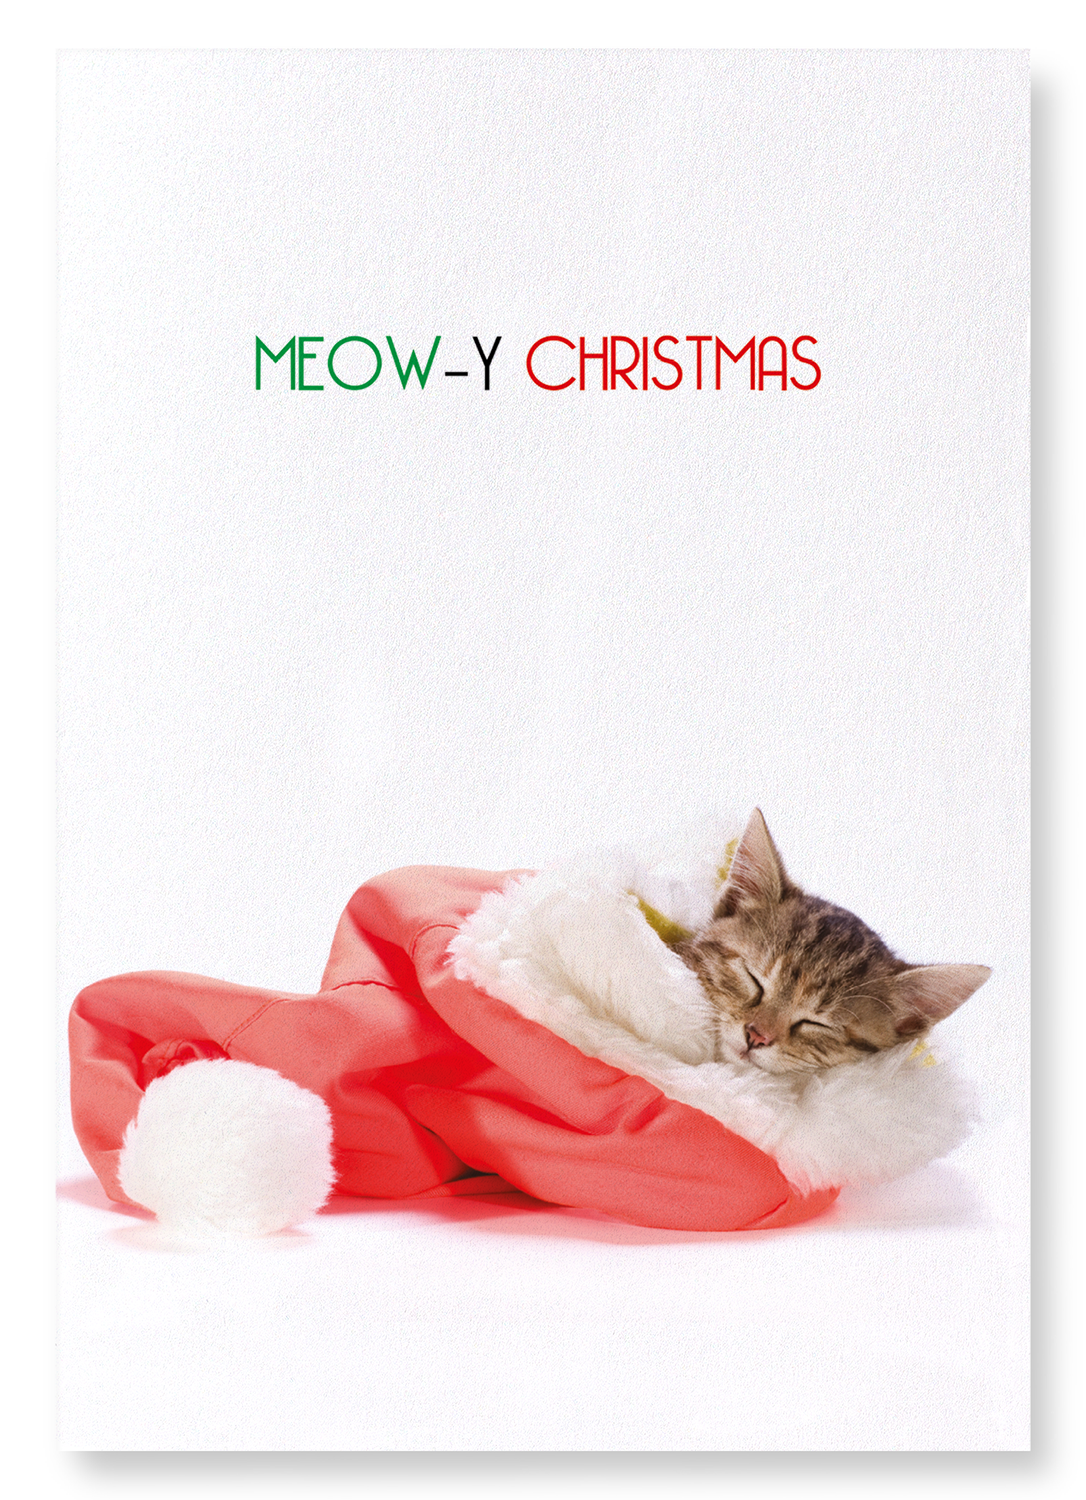 MEOWY CHRISTMAS : Funny Animal Art print